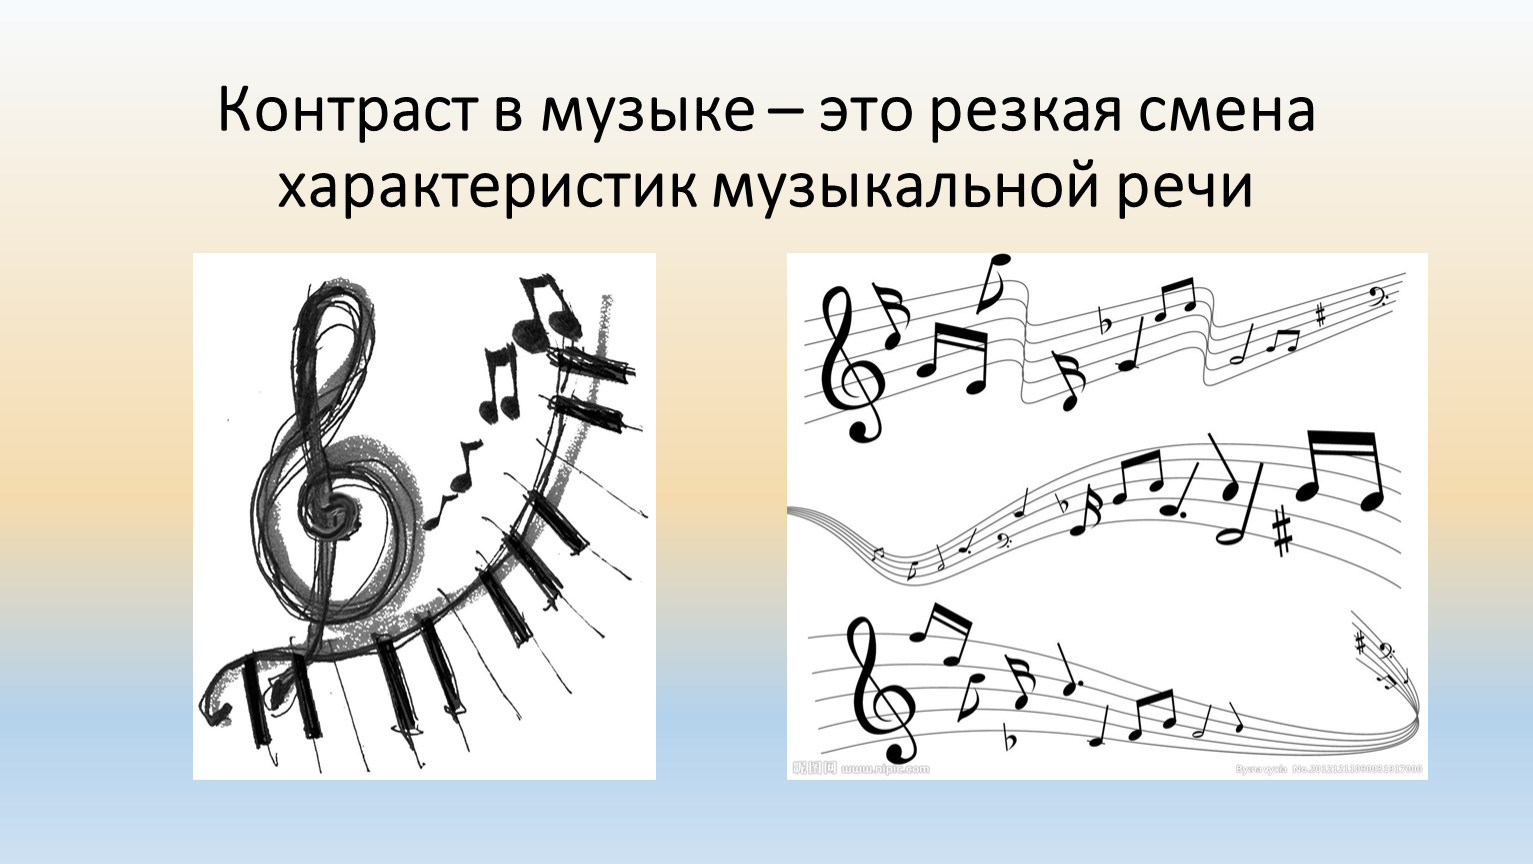 Нужна определенная песня. Музыкальные элементы в Музыке. Музыкальные характеристики музыки. Контраст в Музыке. Музыкальная речь это в Музыке.